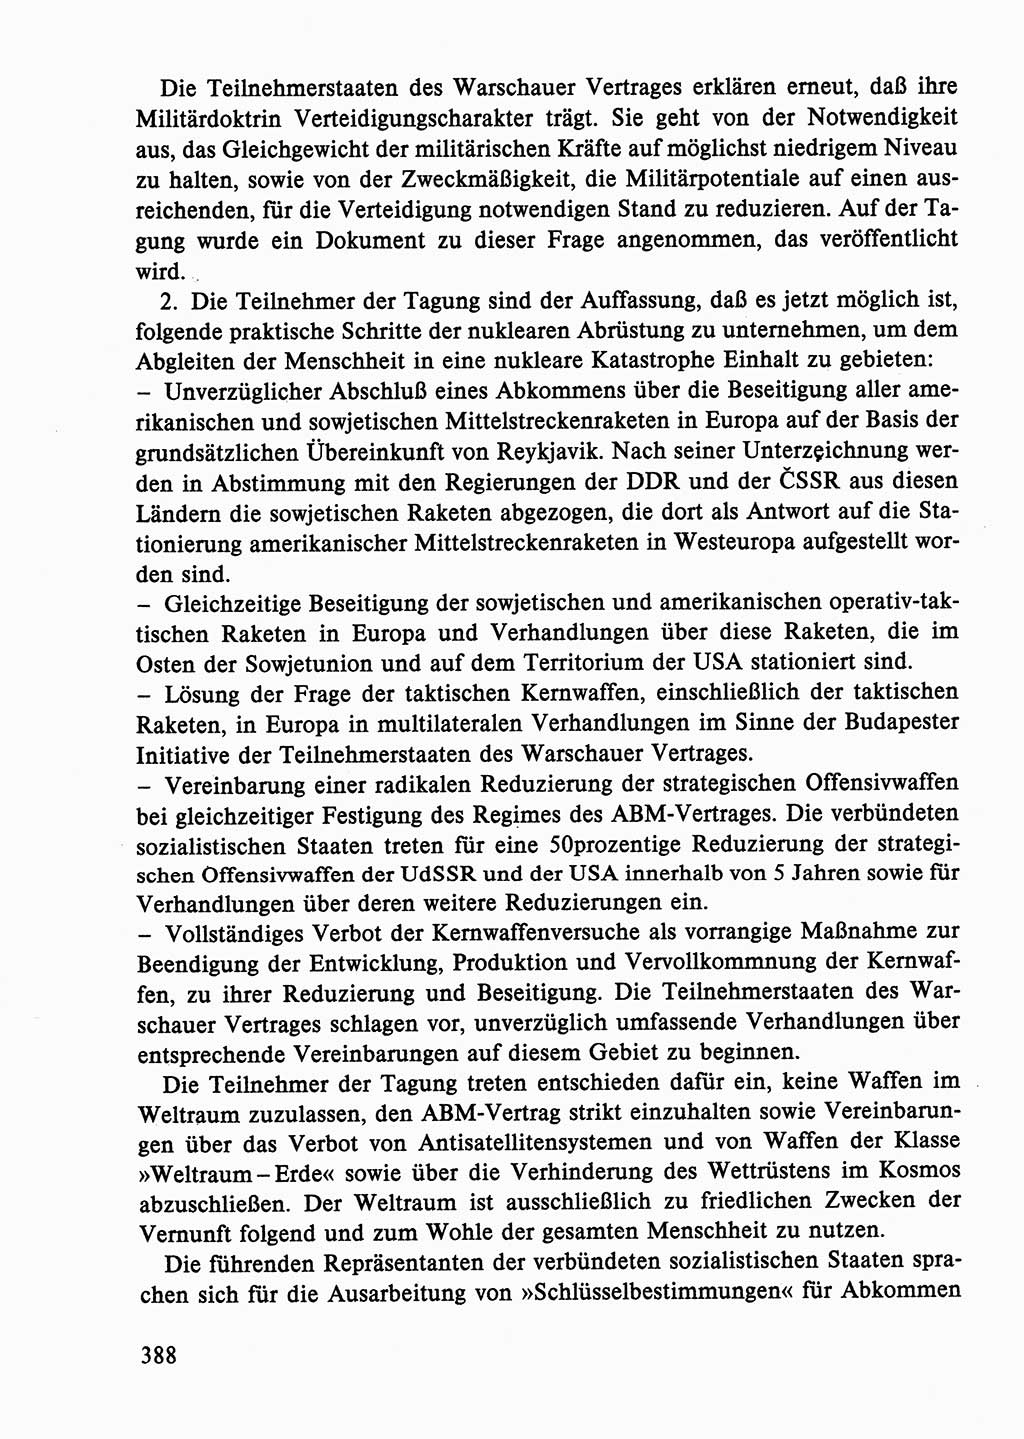 Dokumente der Sozialistischen Einheitspartei Deutschlands (SED) [Deutsche Demokratische Republik (DDR)] 1986-1987, Seite 388 (Dok. SED DDR 1986-1987, S. 388)